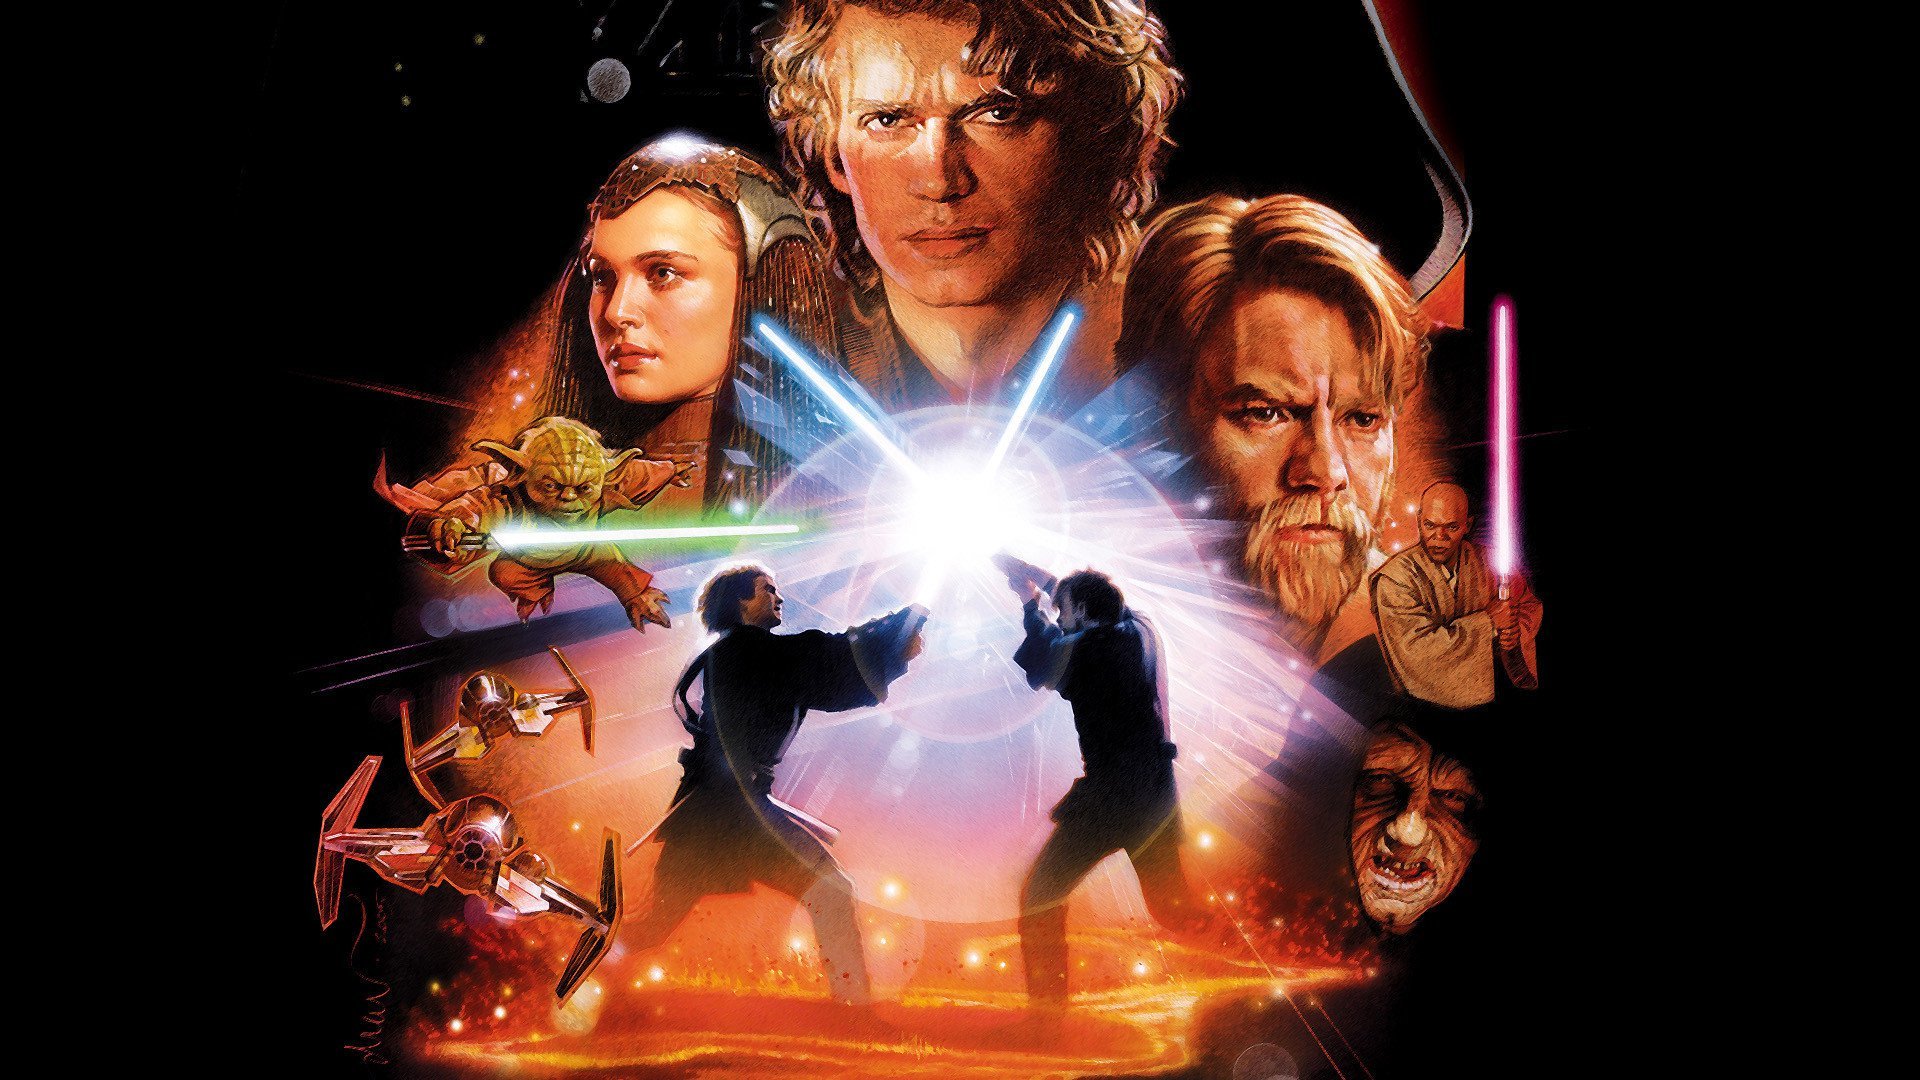 ვარსკვლავური ომები 3: სიტხების შურისძიება / Star Wars: Episode III - Revenge of the Sith ქართულად